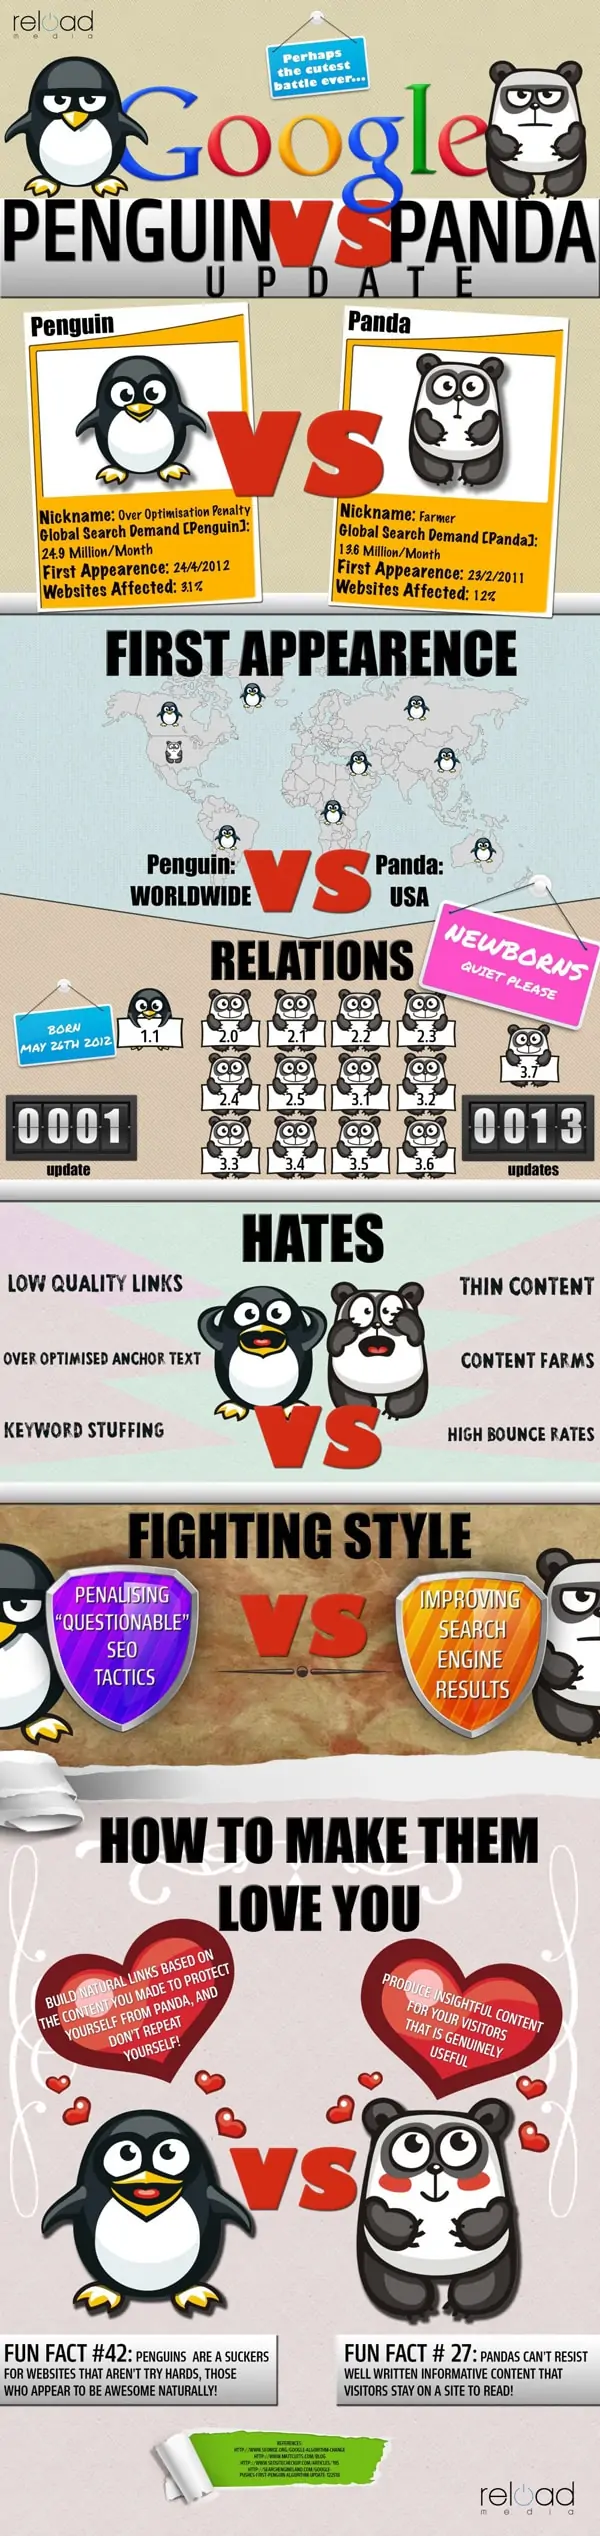 Une infographie pour différencier Panda et Penguin